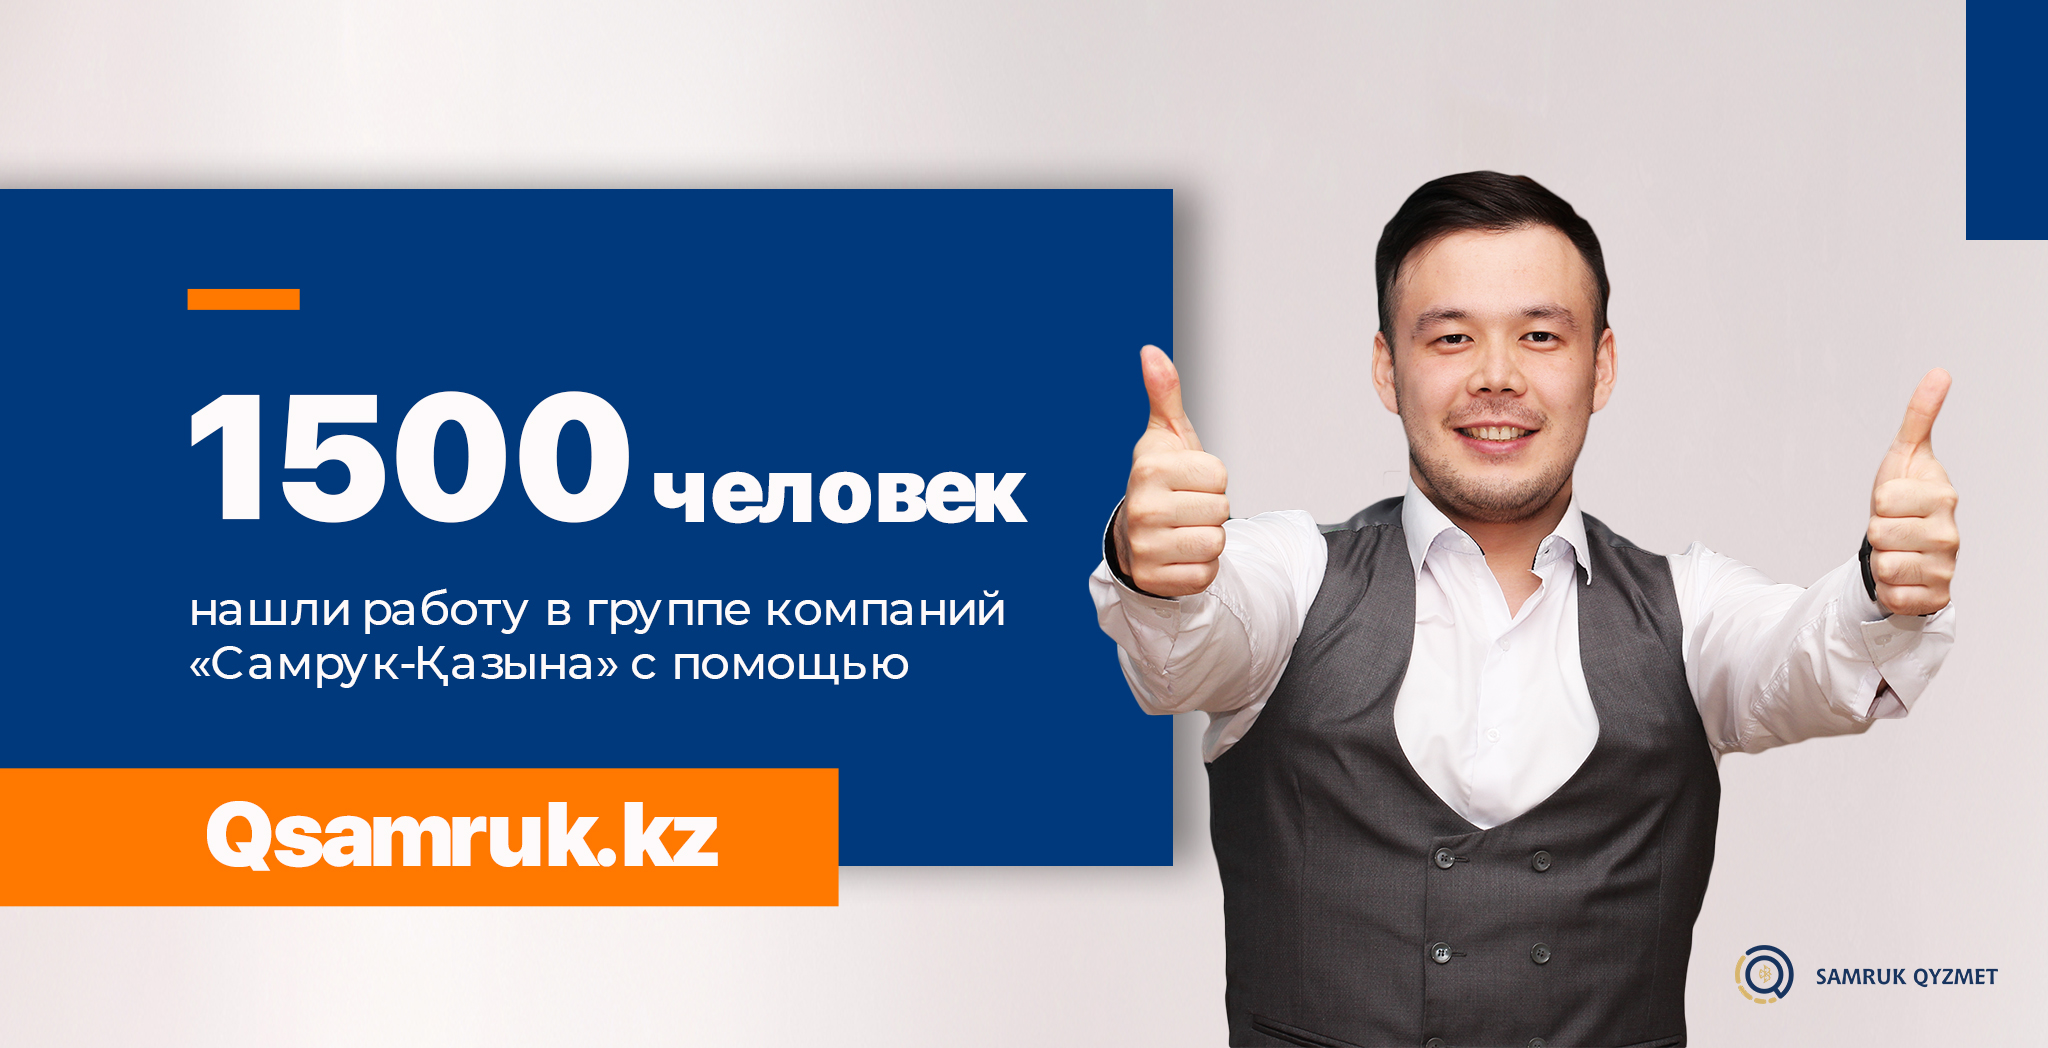 1500 человек нашли работу в группе компаний «Самрук-Қазына» с помощью Qsamruk.kz